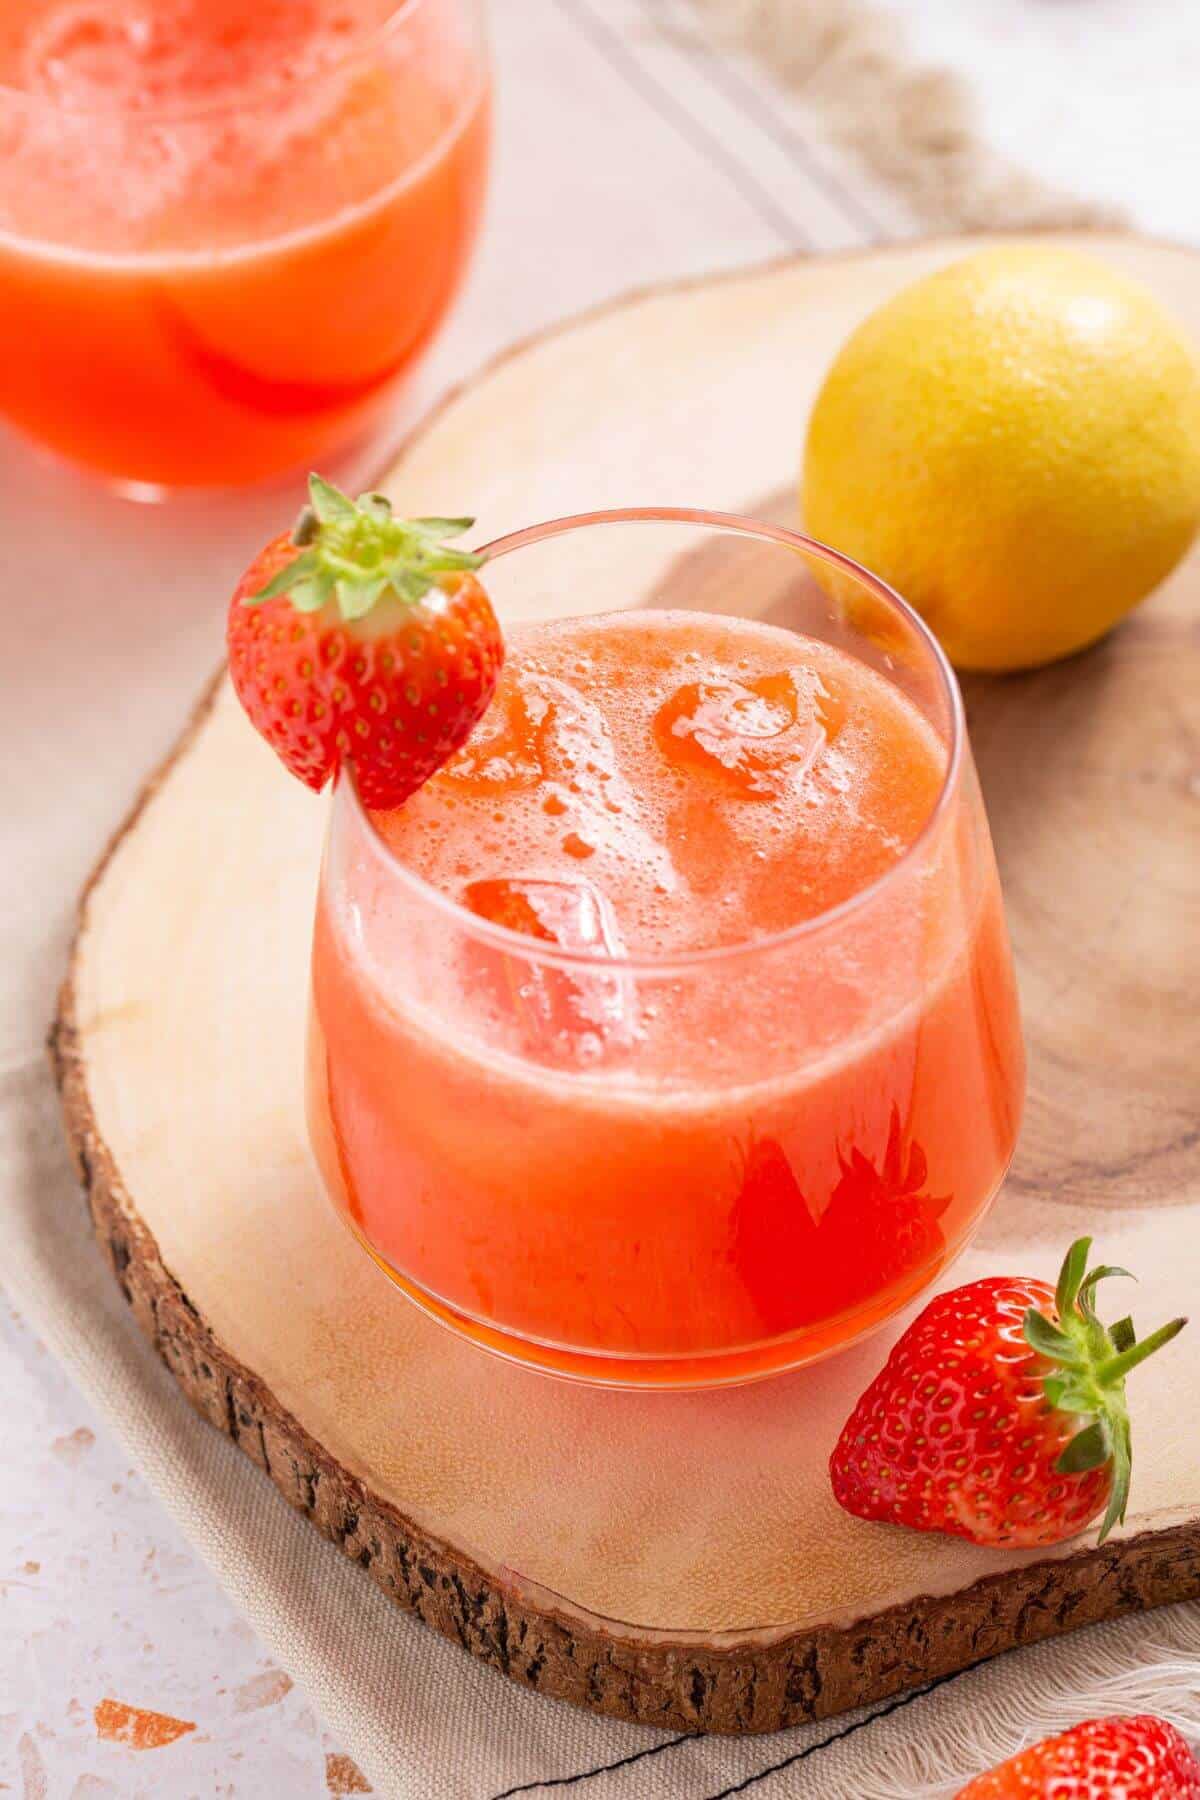 Angled shot over glass of strawberry lemonade.